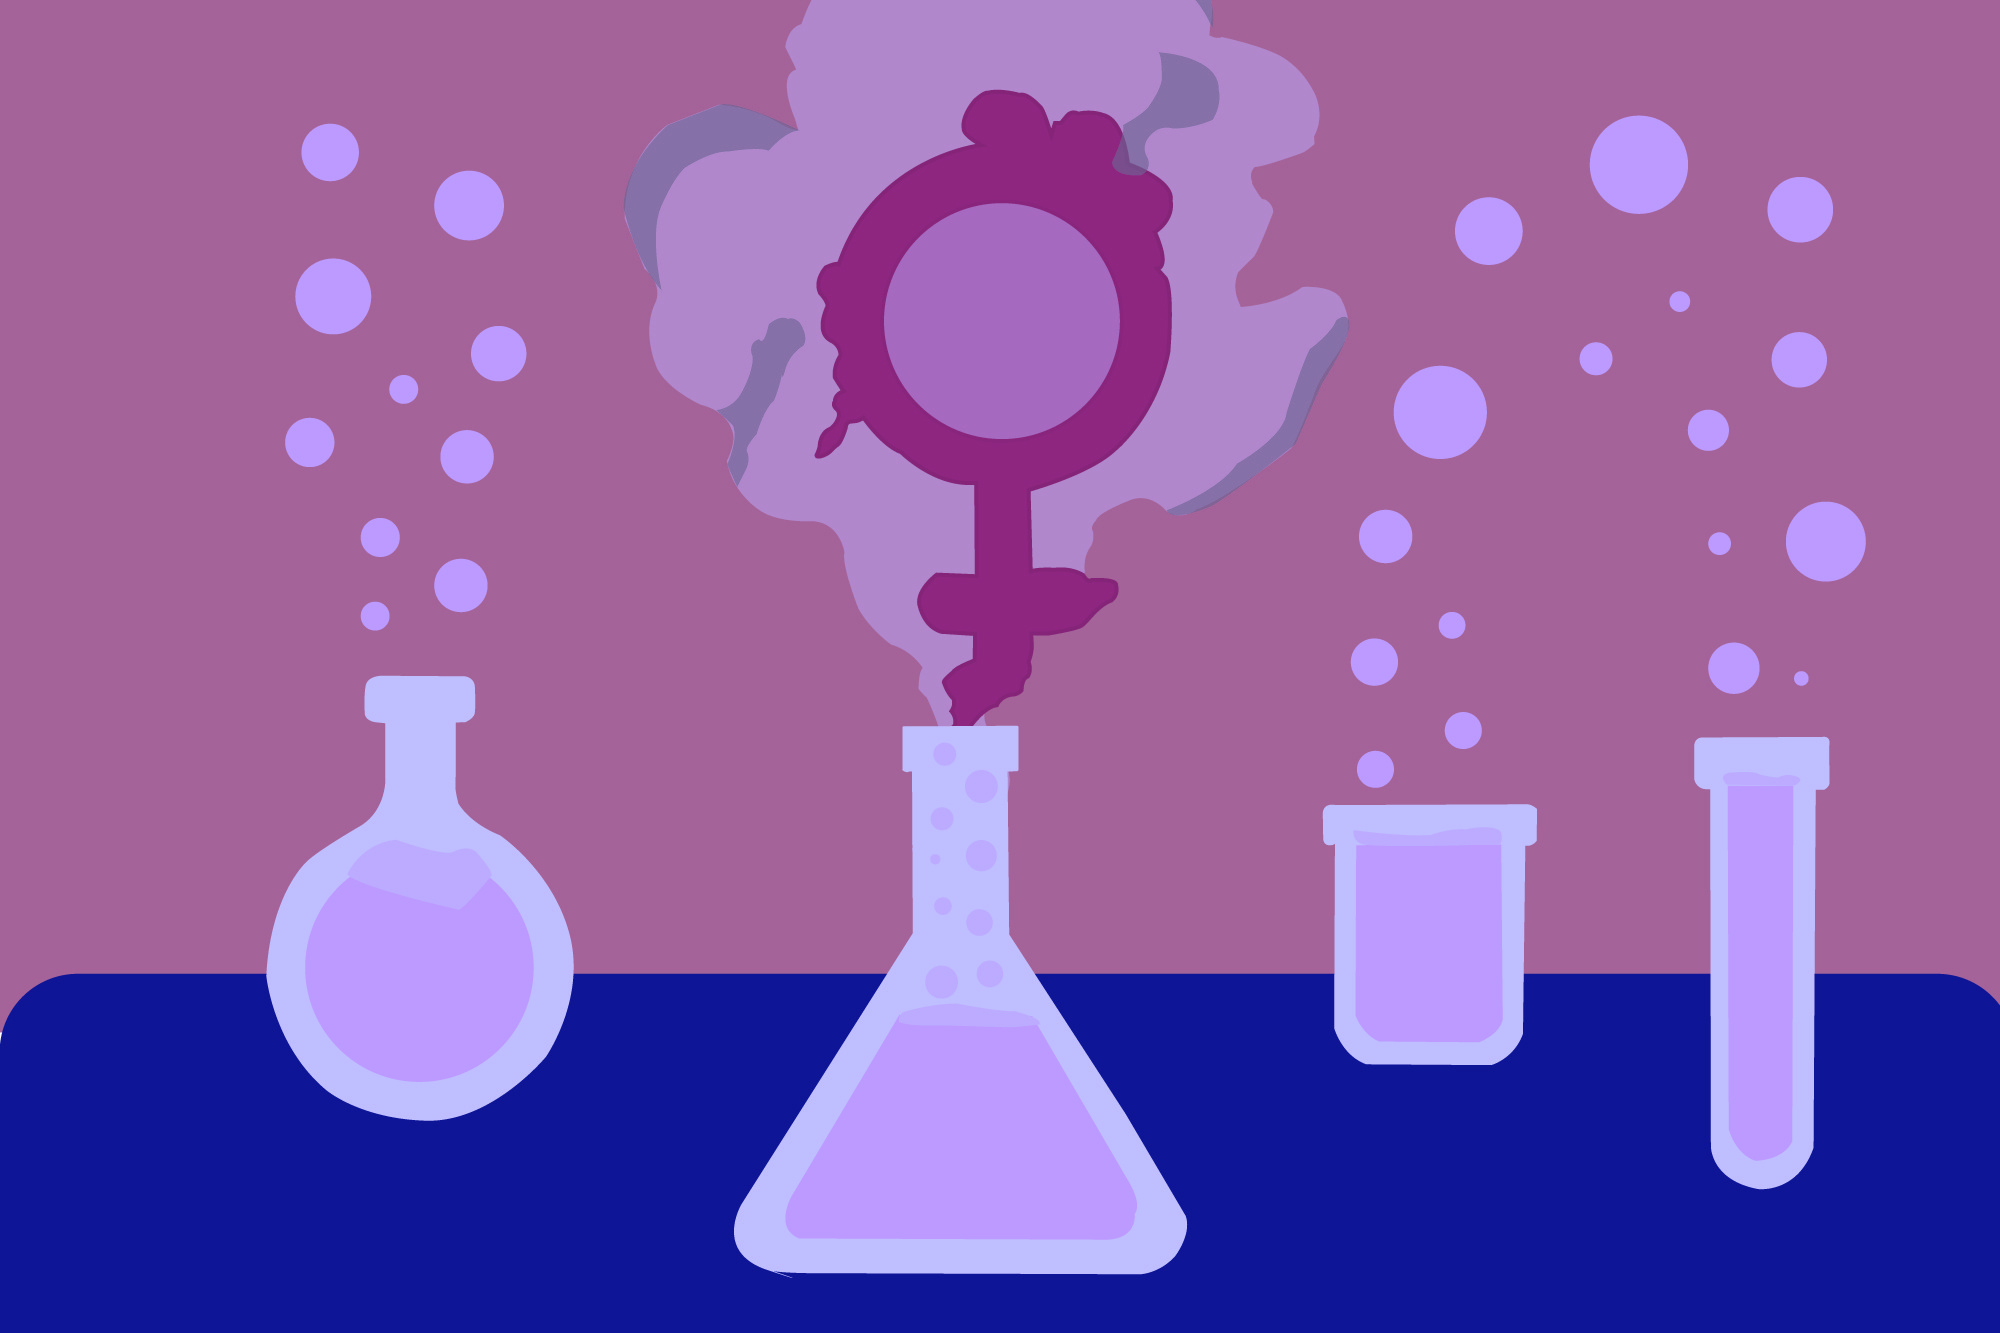 mulheres na ciência ilustração por Guigas Costa